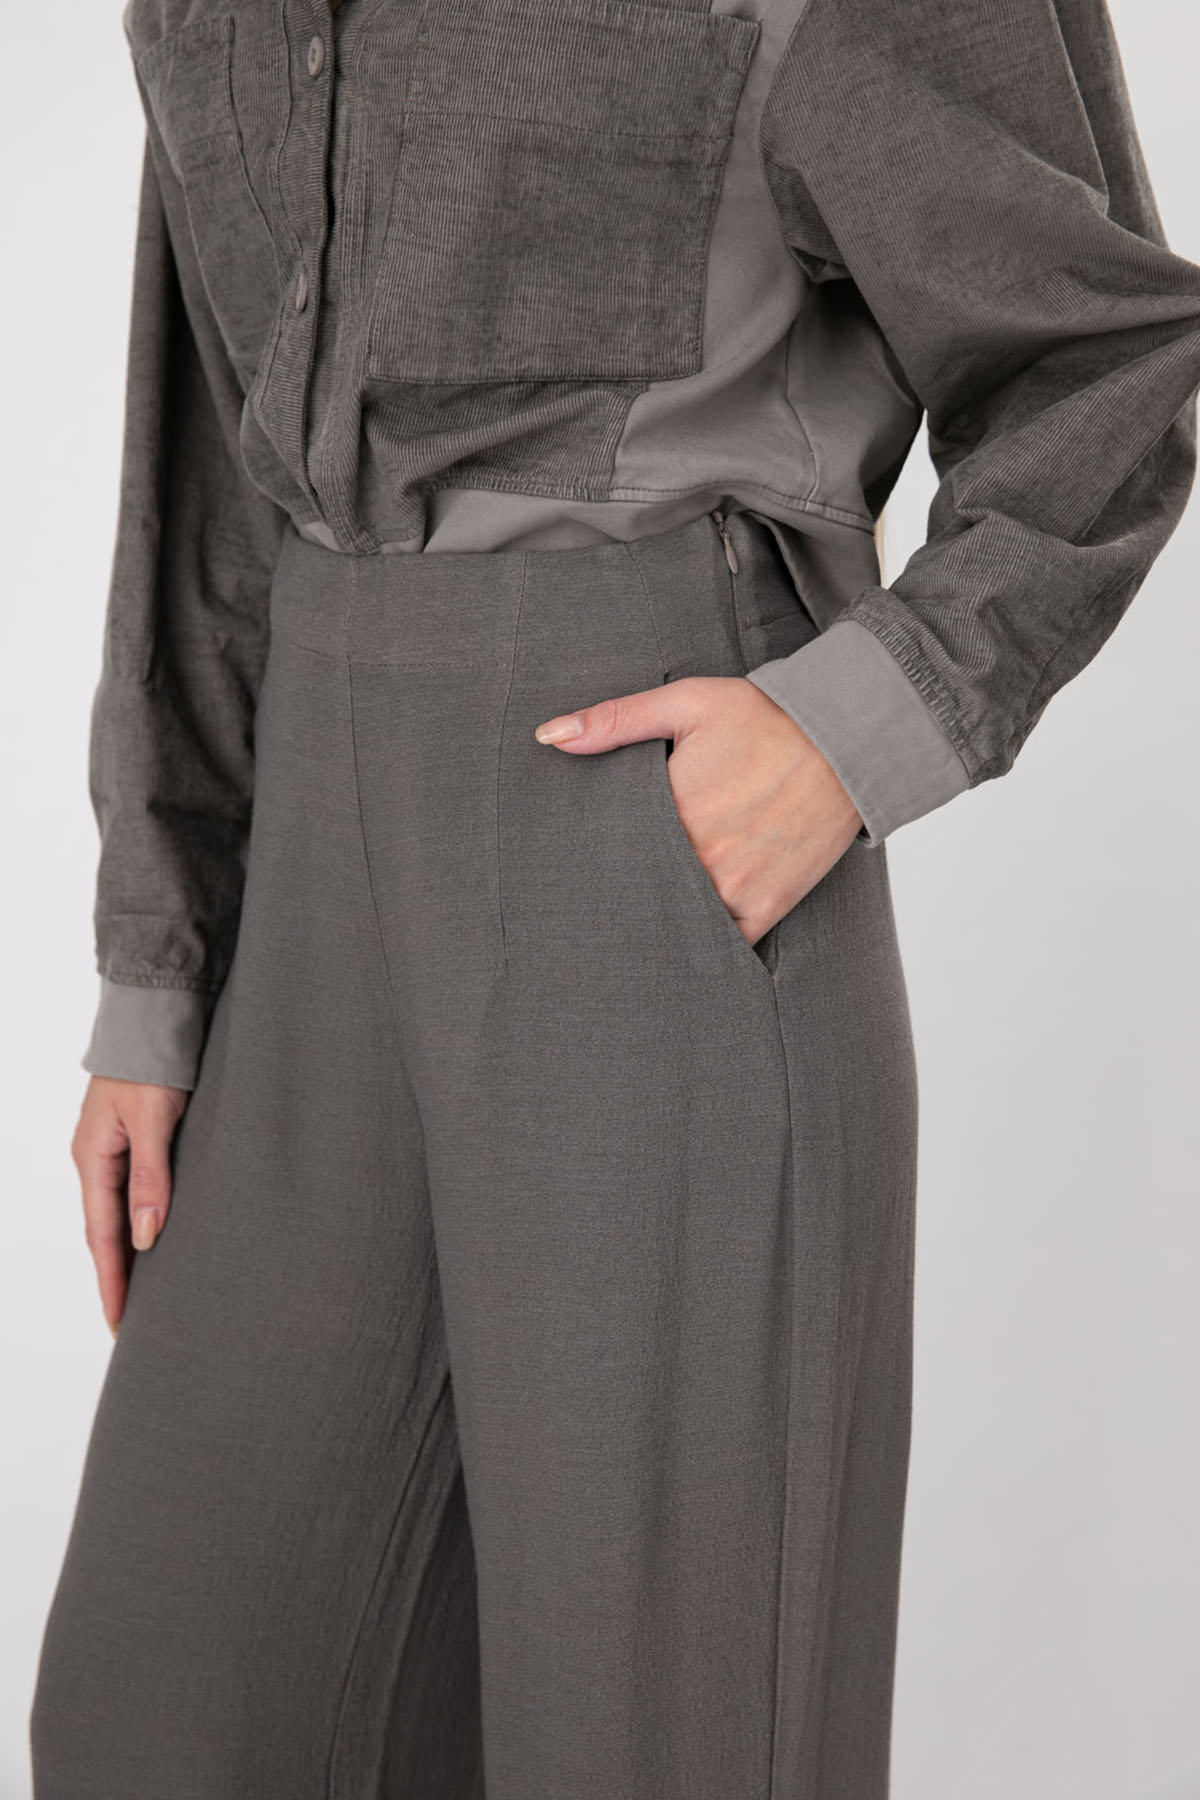 Transit Geniş Kesim Pantolon-Libas Trendy Fashion Store